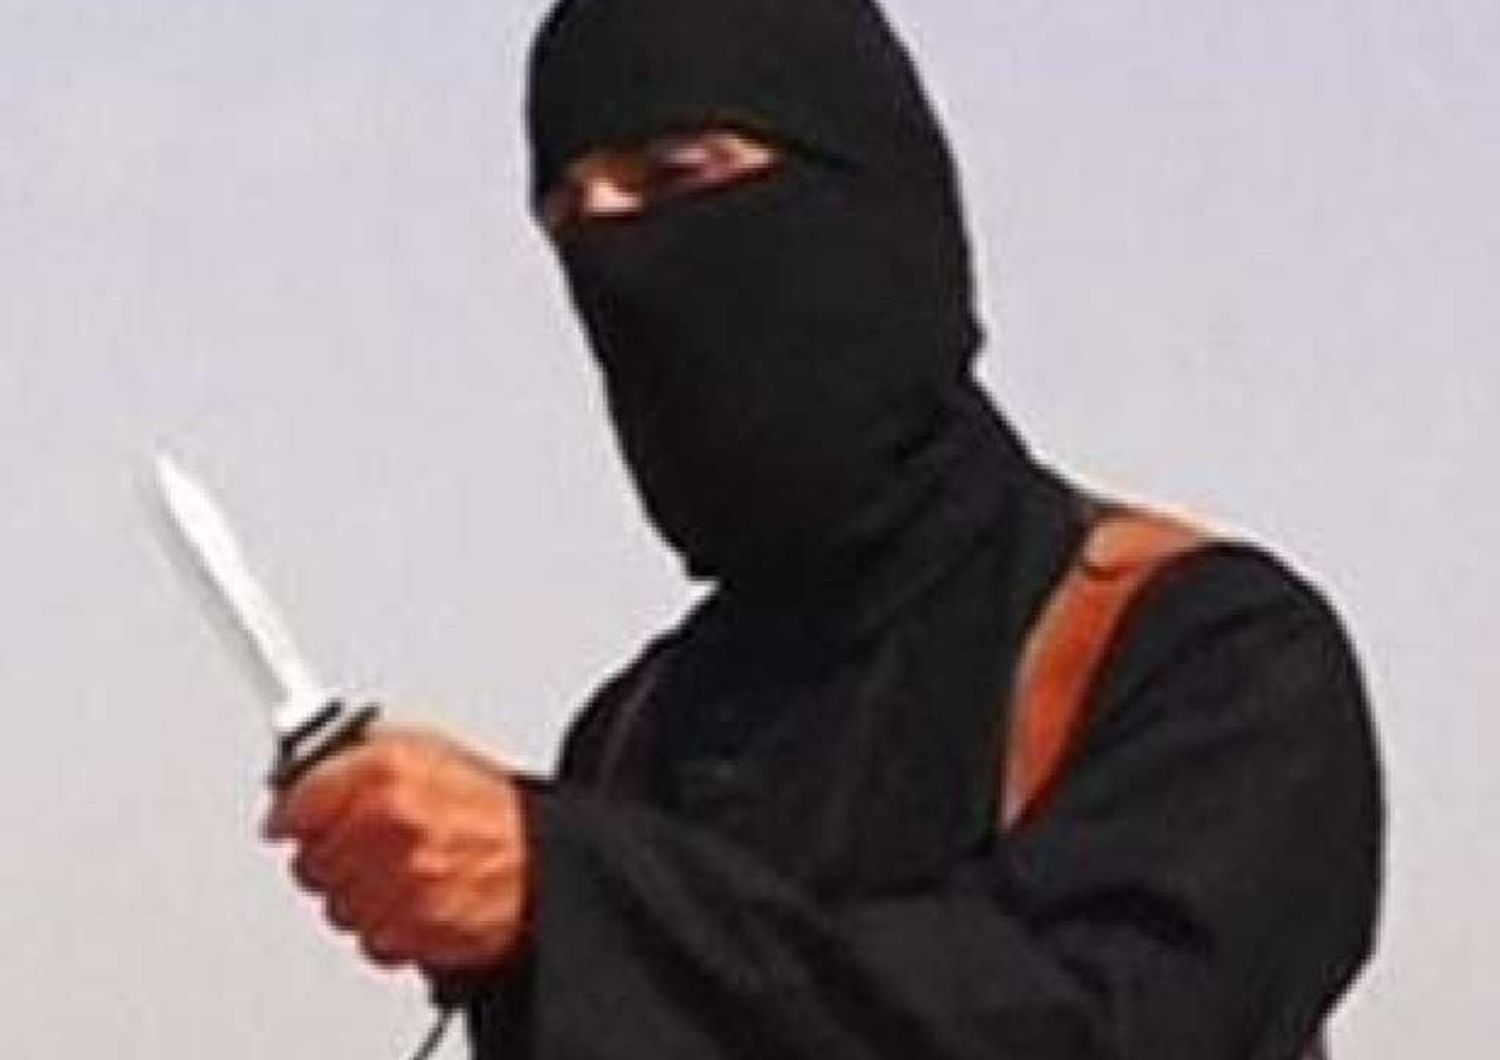 Isis diffonde video reporter inglese, "L'Occidente sbaglia"